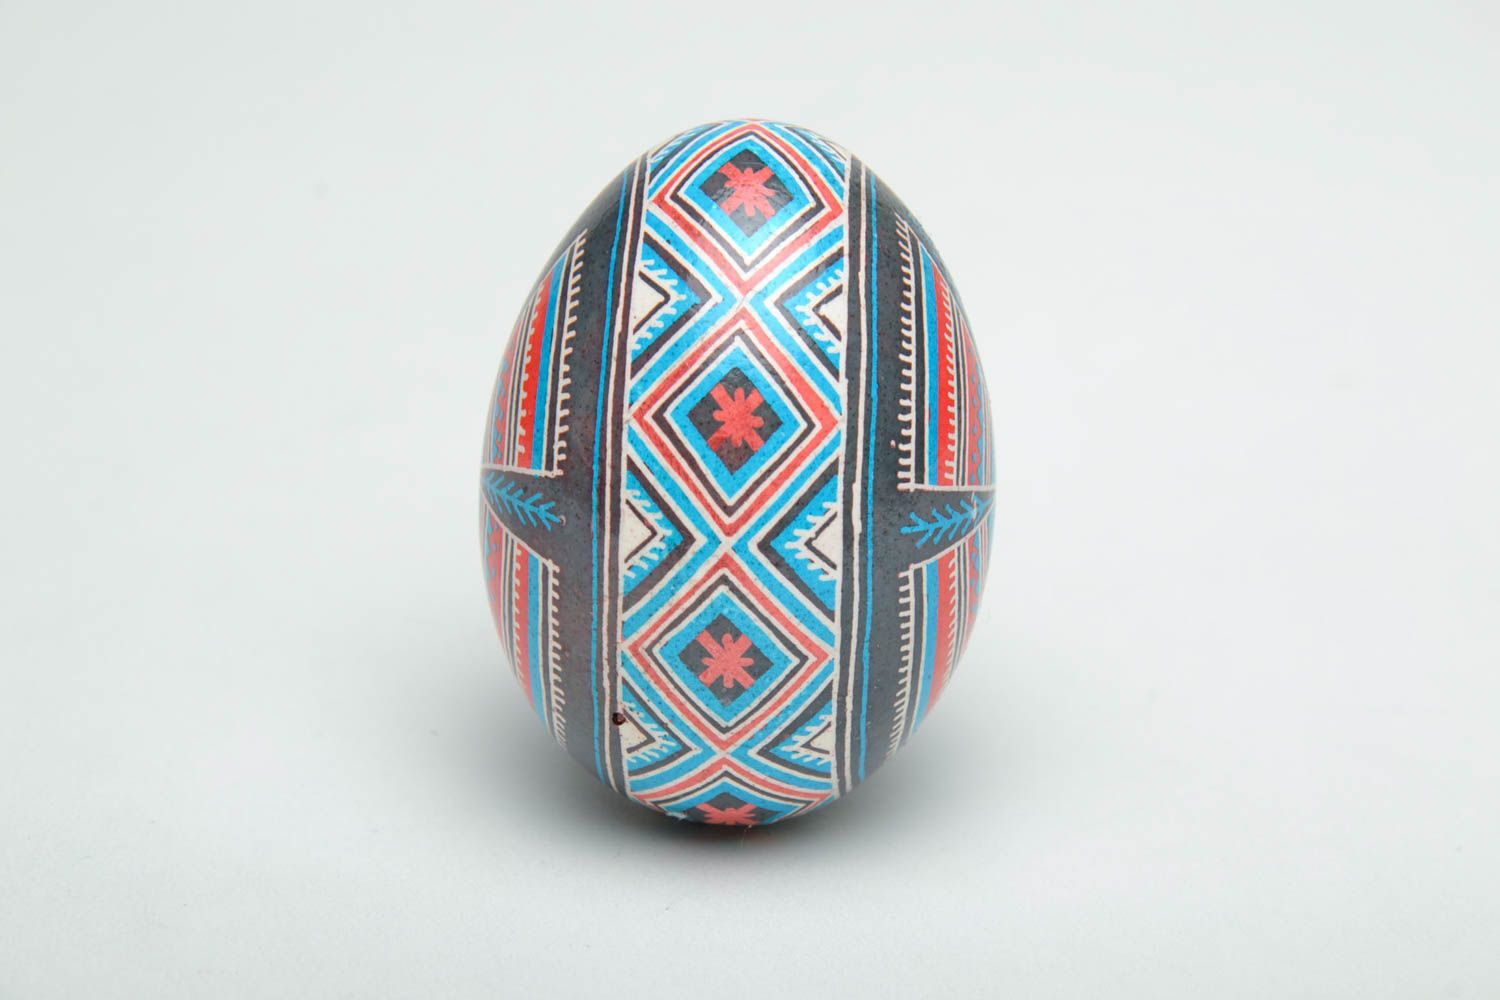 Œuf de Pâques pyssanka fait main peint de couleurs d'aniline et de cire photo 3